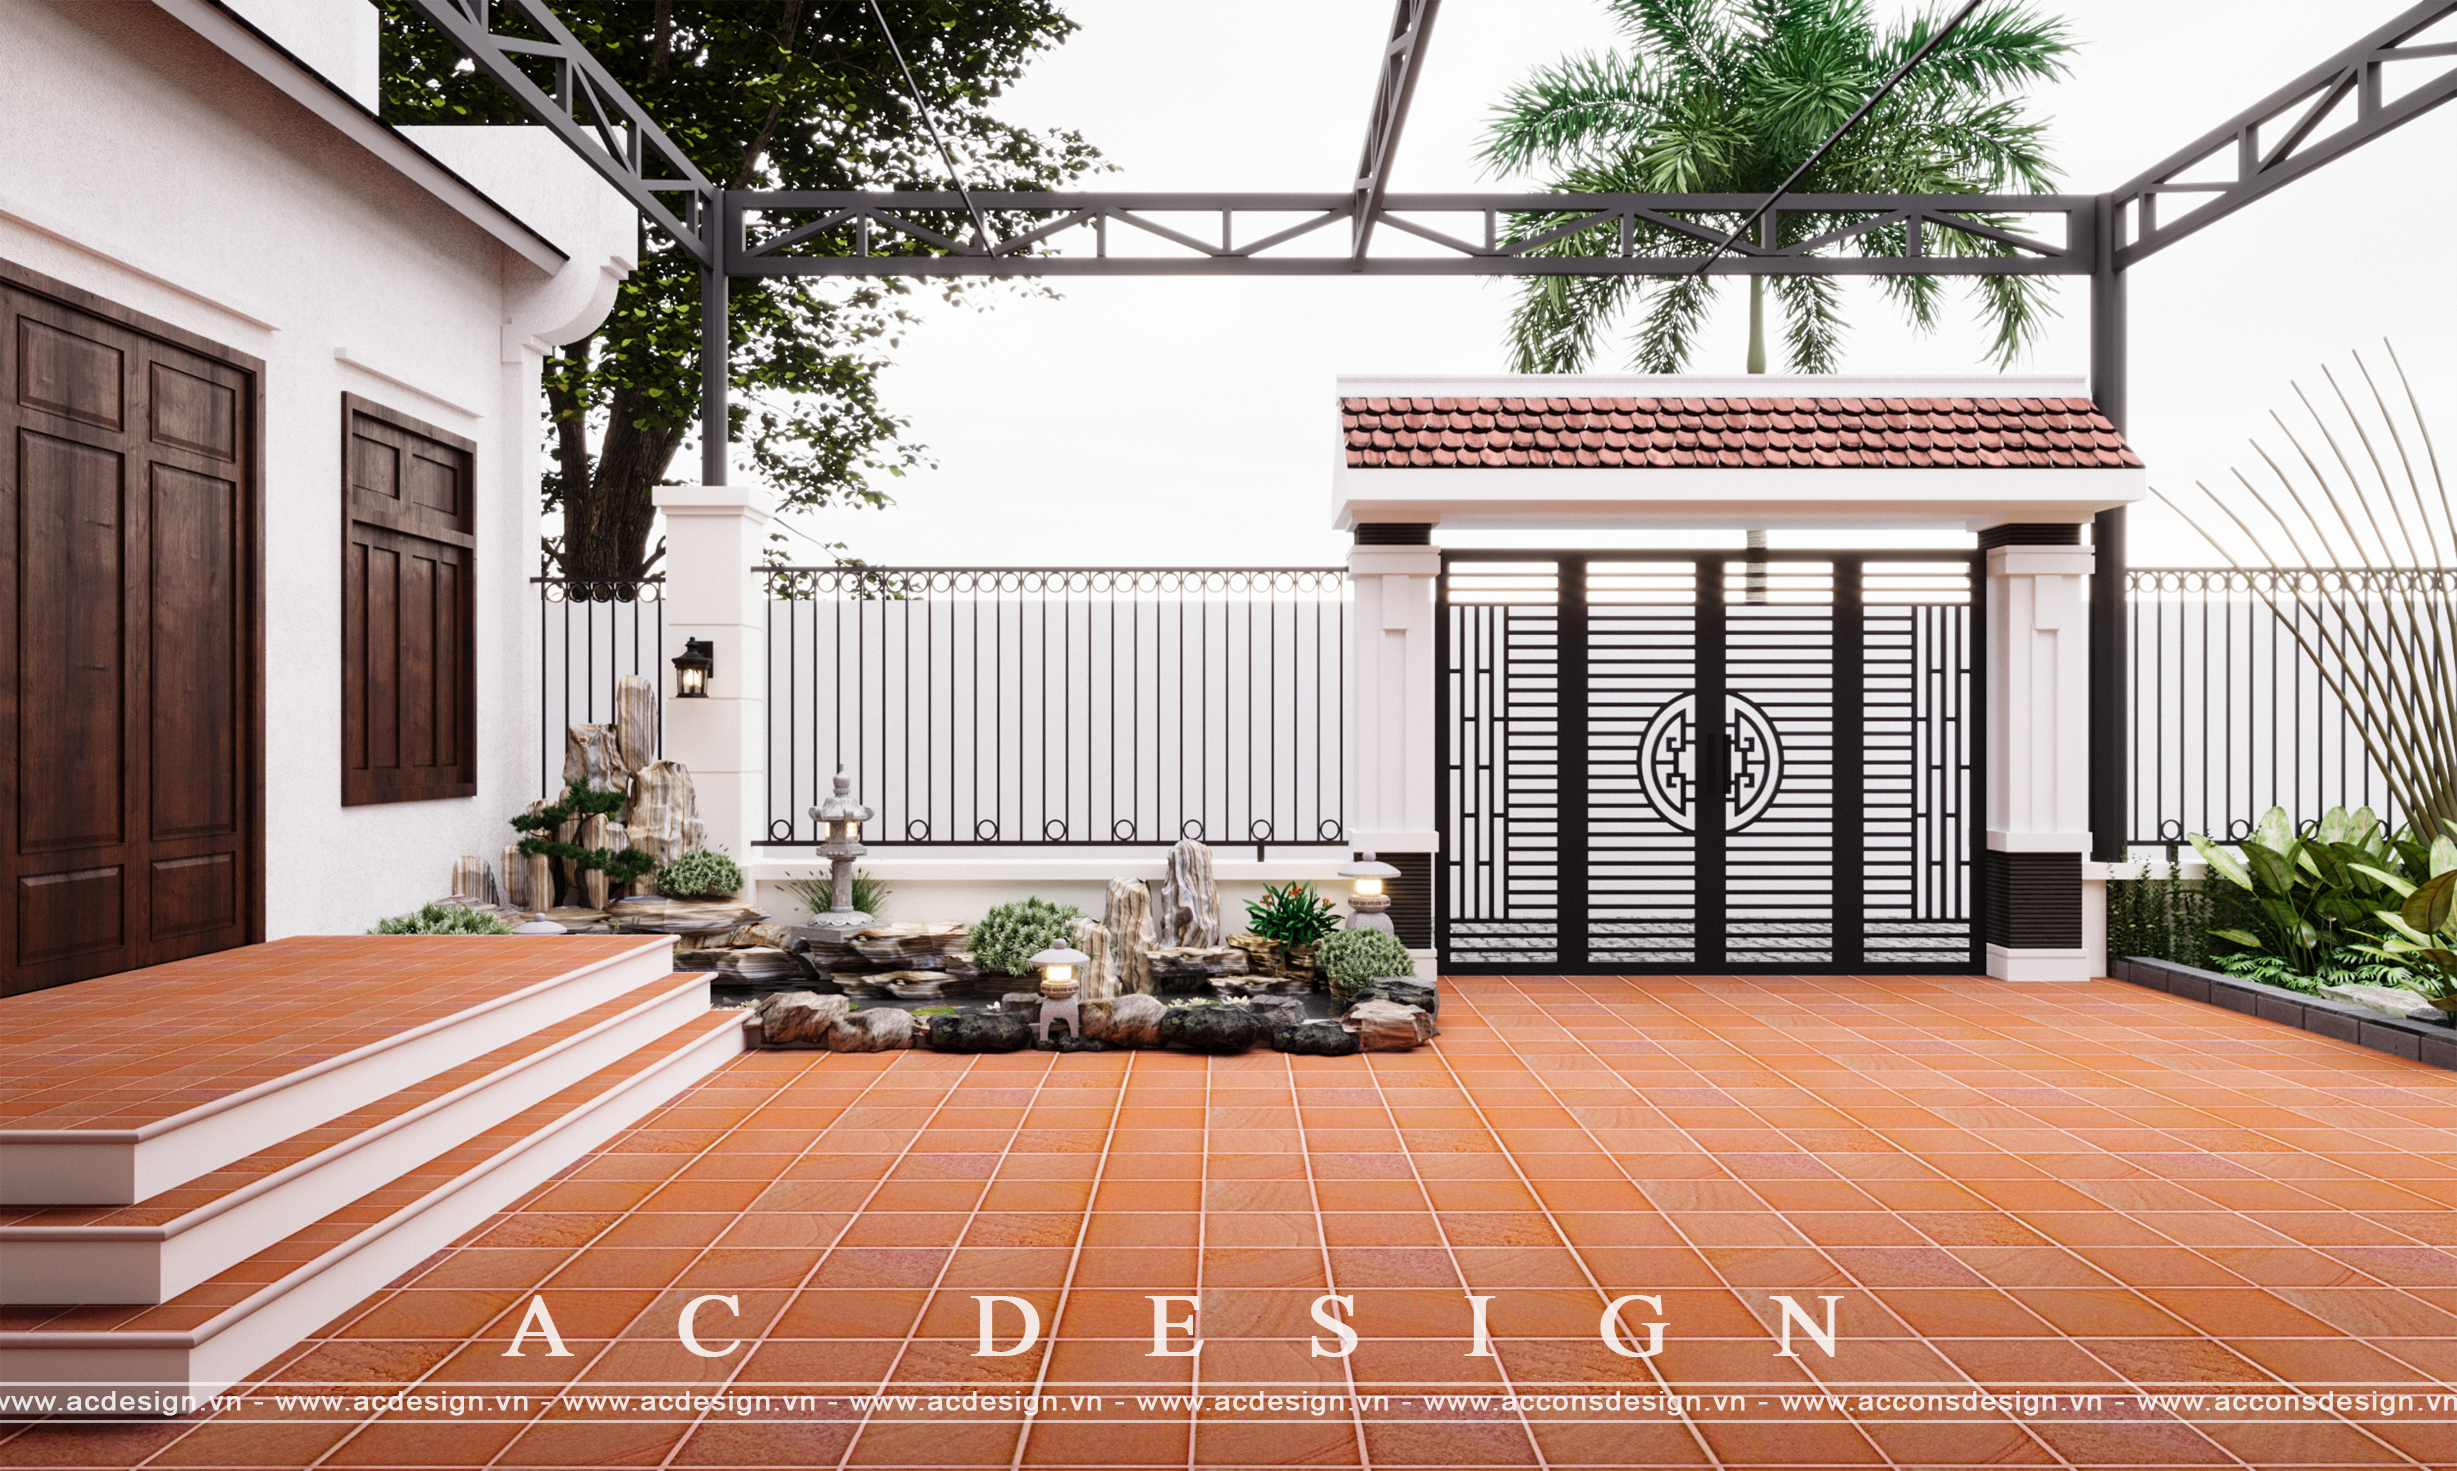 Thiết kế Nhà tại Bắc Ninh Thiết kế sân vườn 1678702383 1